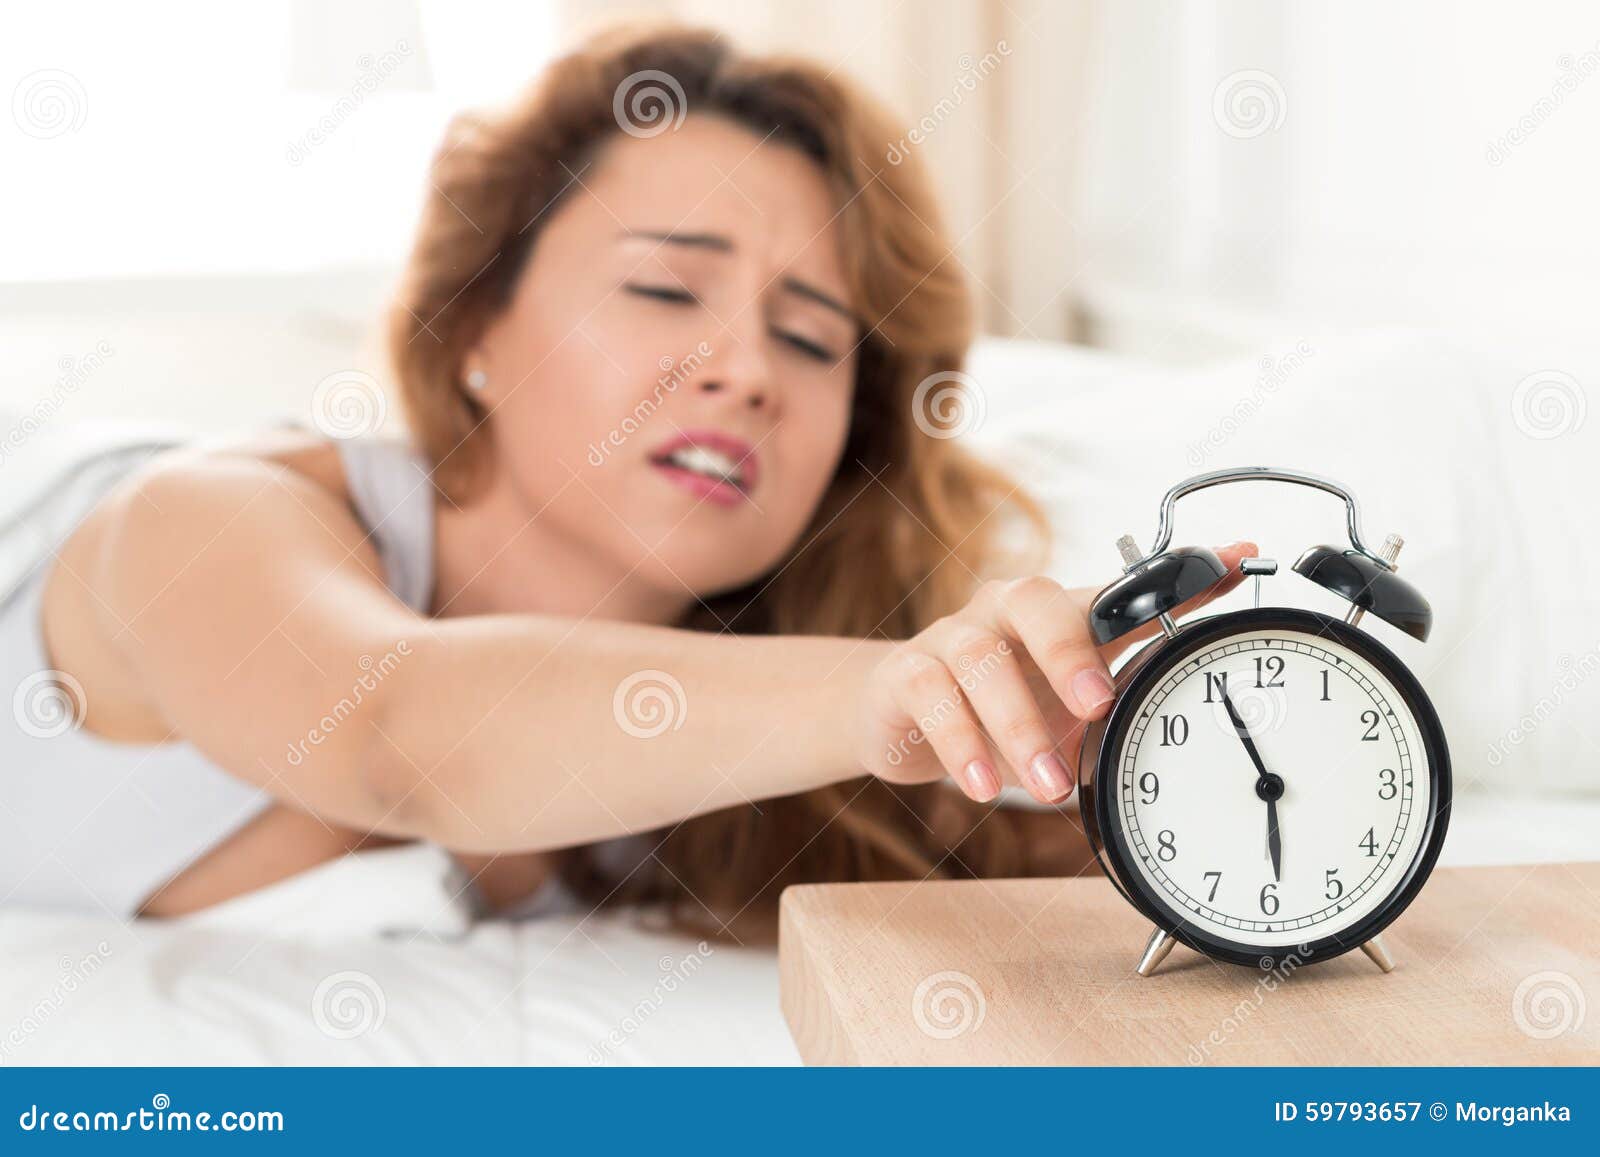 Просыпаюсь раз в час. Утренний подъем. Женщина с будильником. Ранний подъем утром. Девушка резко просыпается.